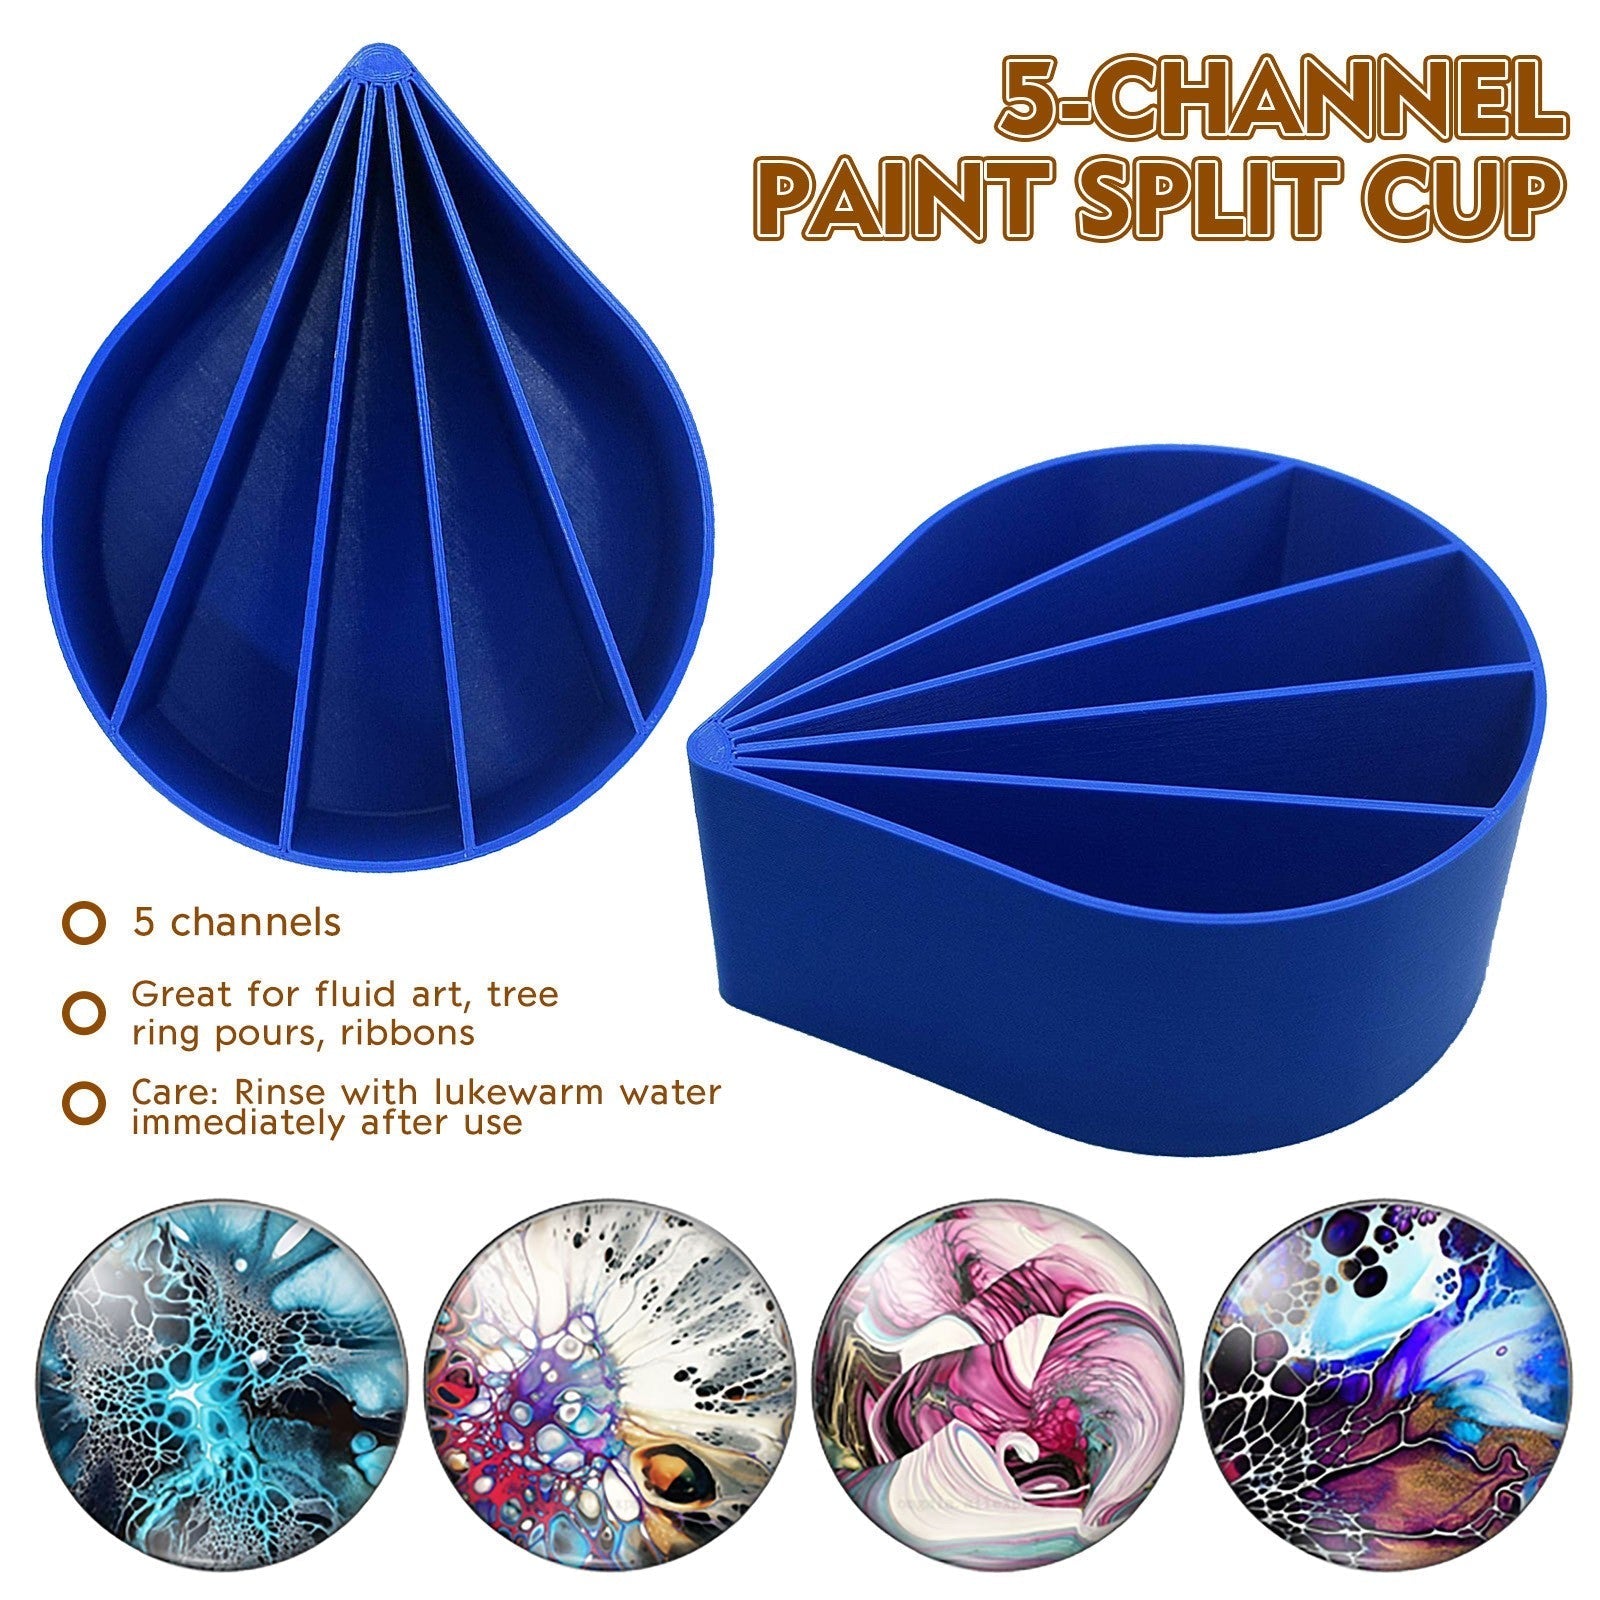 Pouring Paint Split Cup Channels 